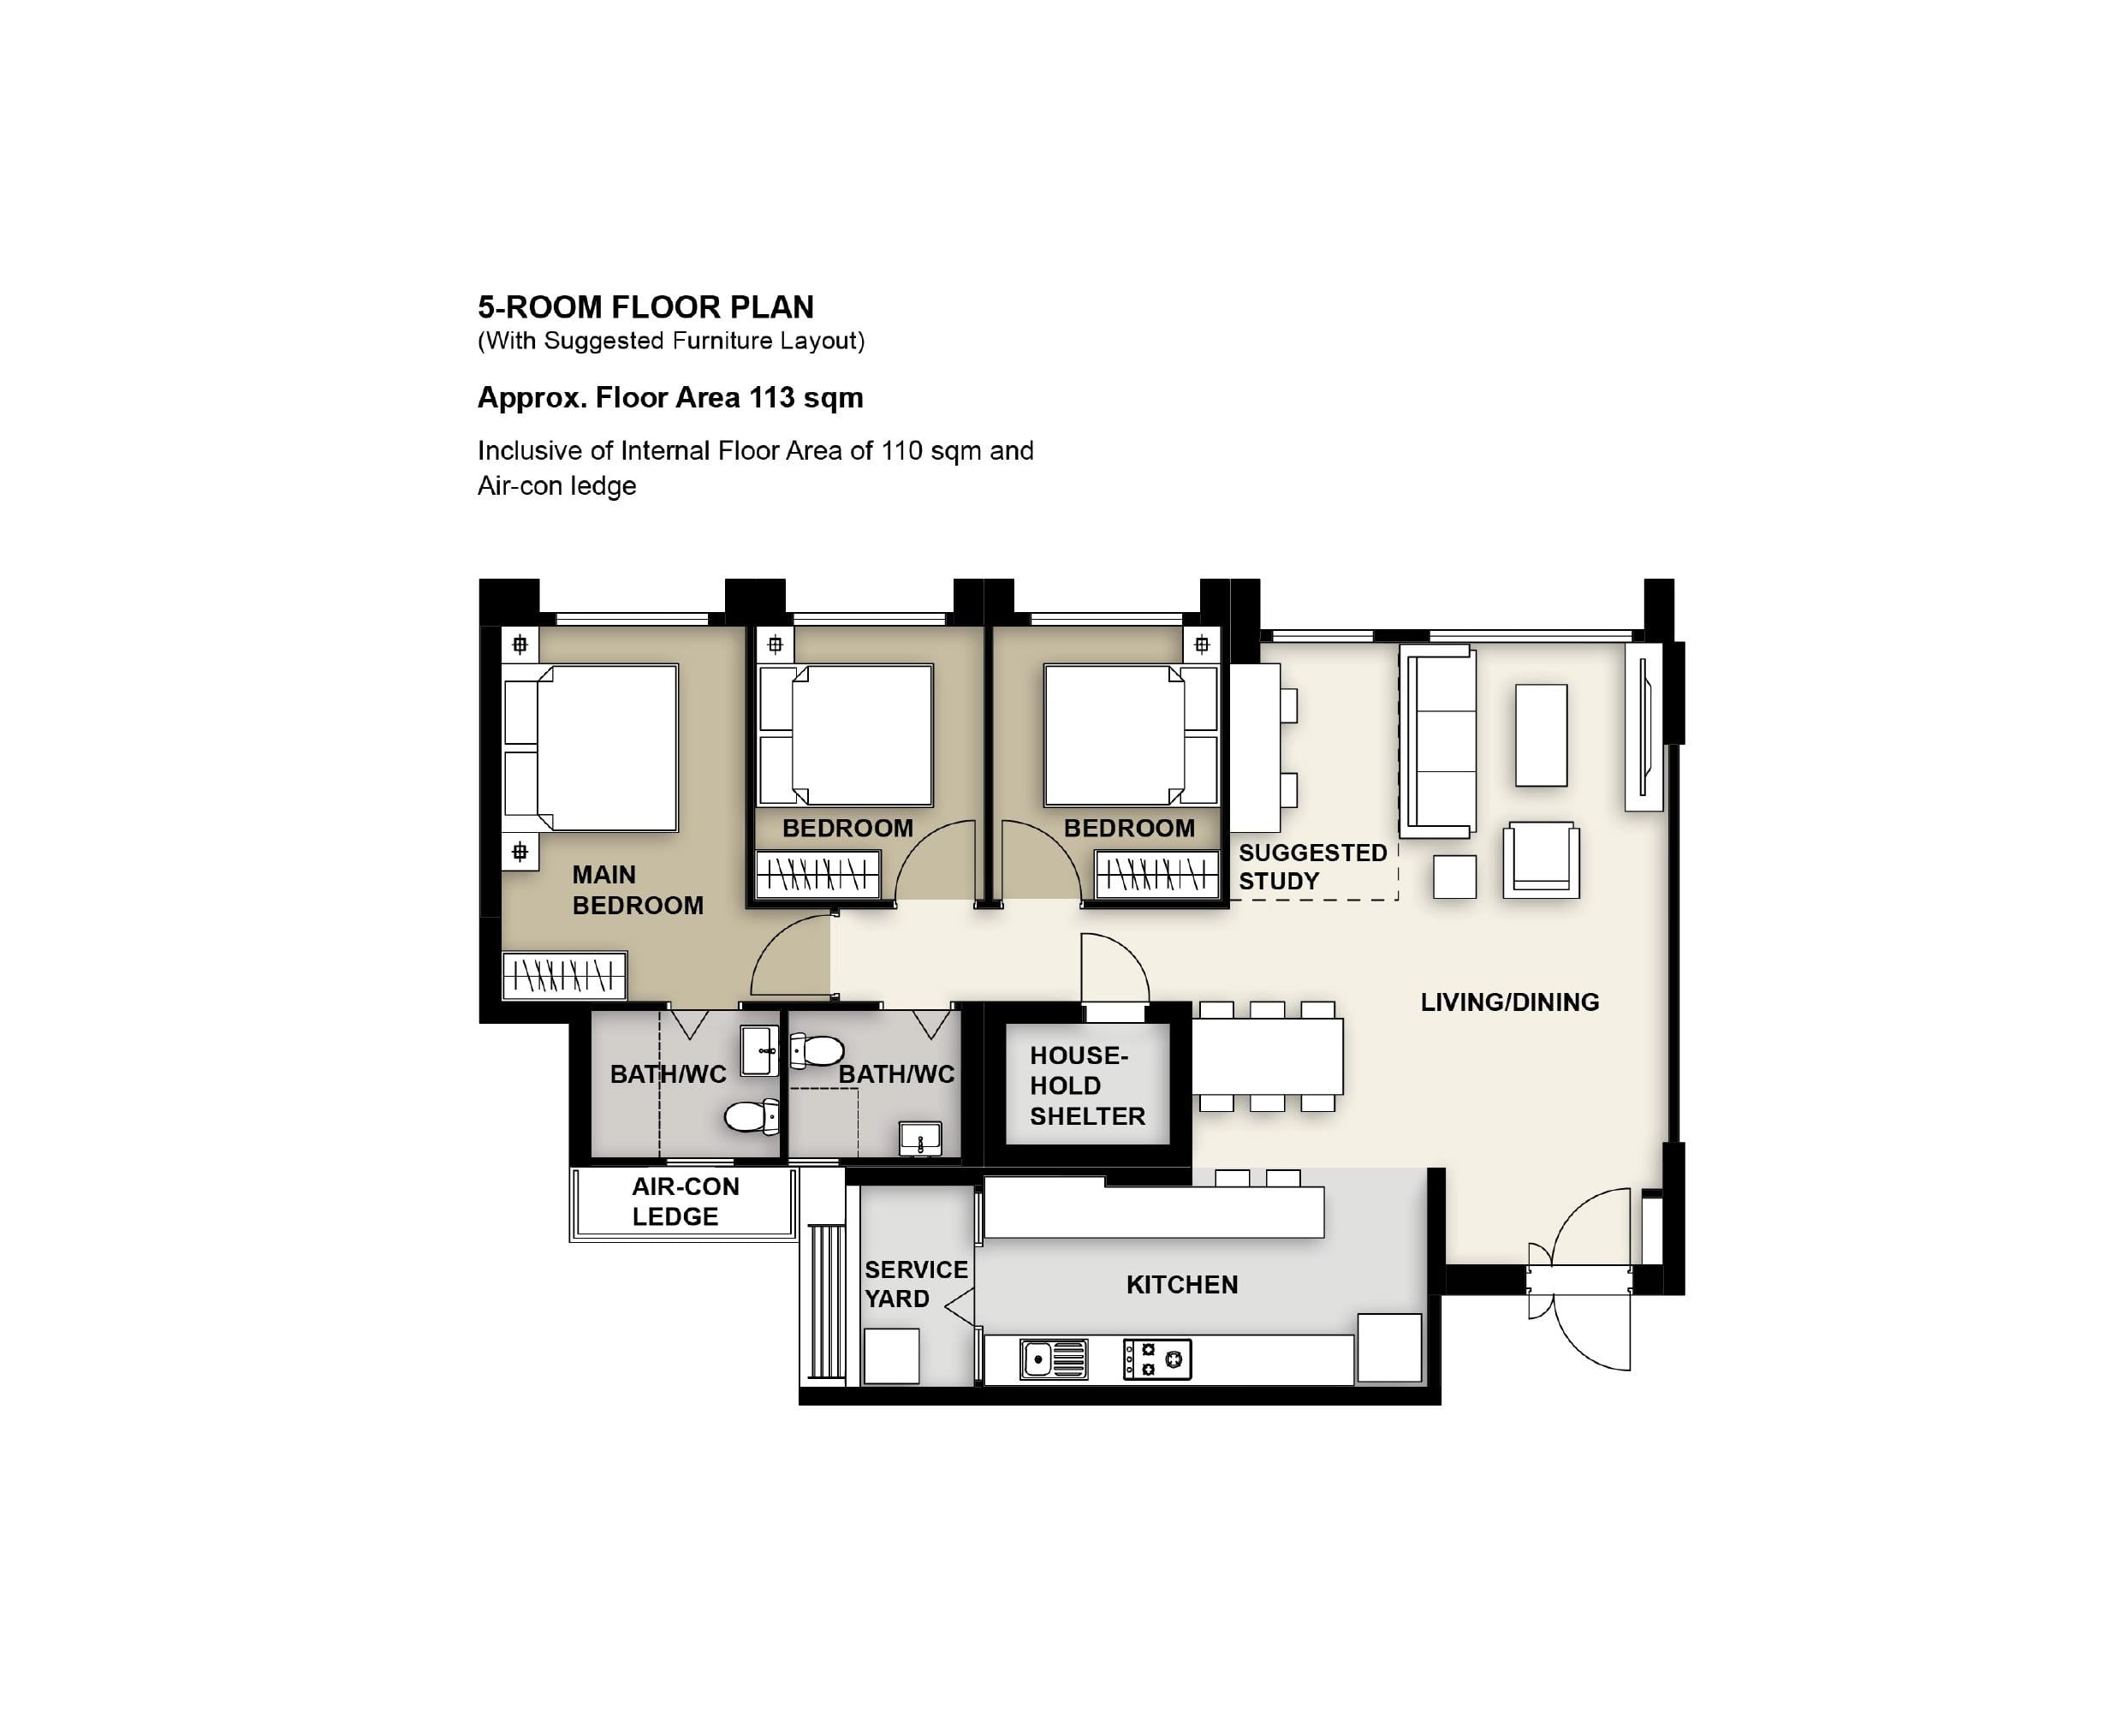 Keat Hong Grange 5 Room Floor Plan